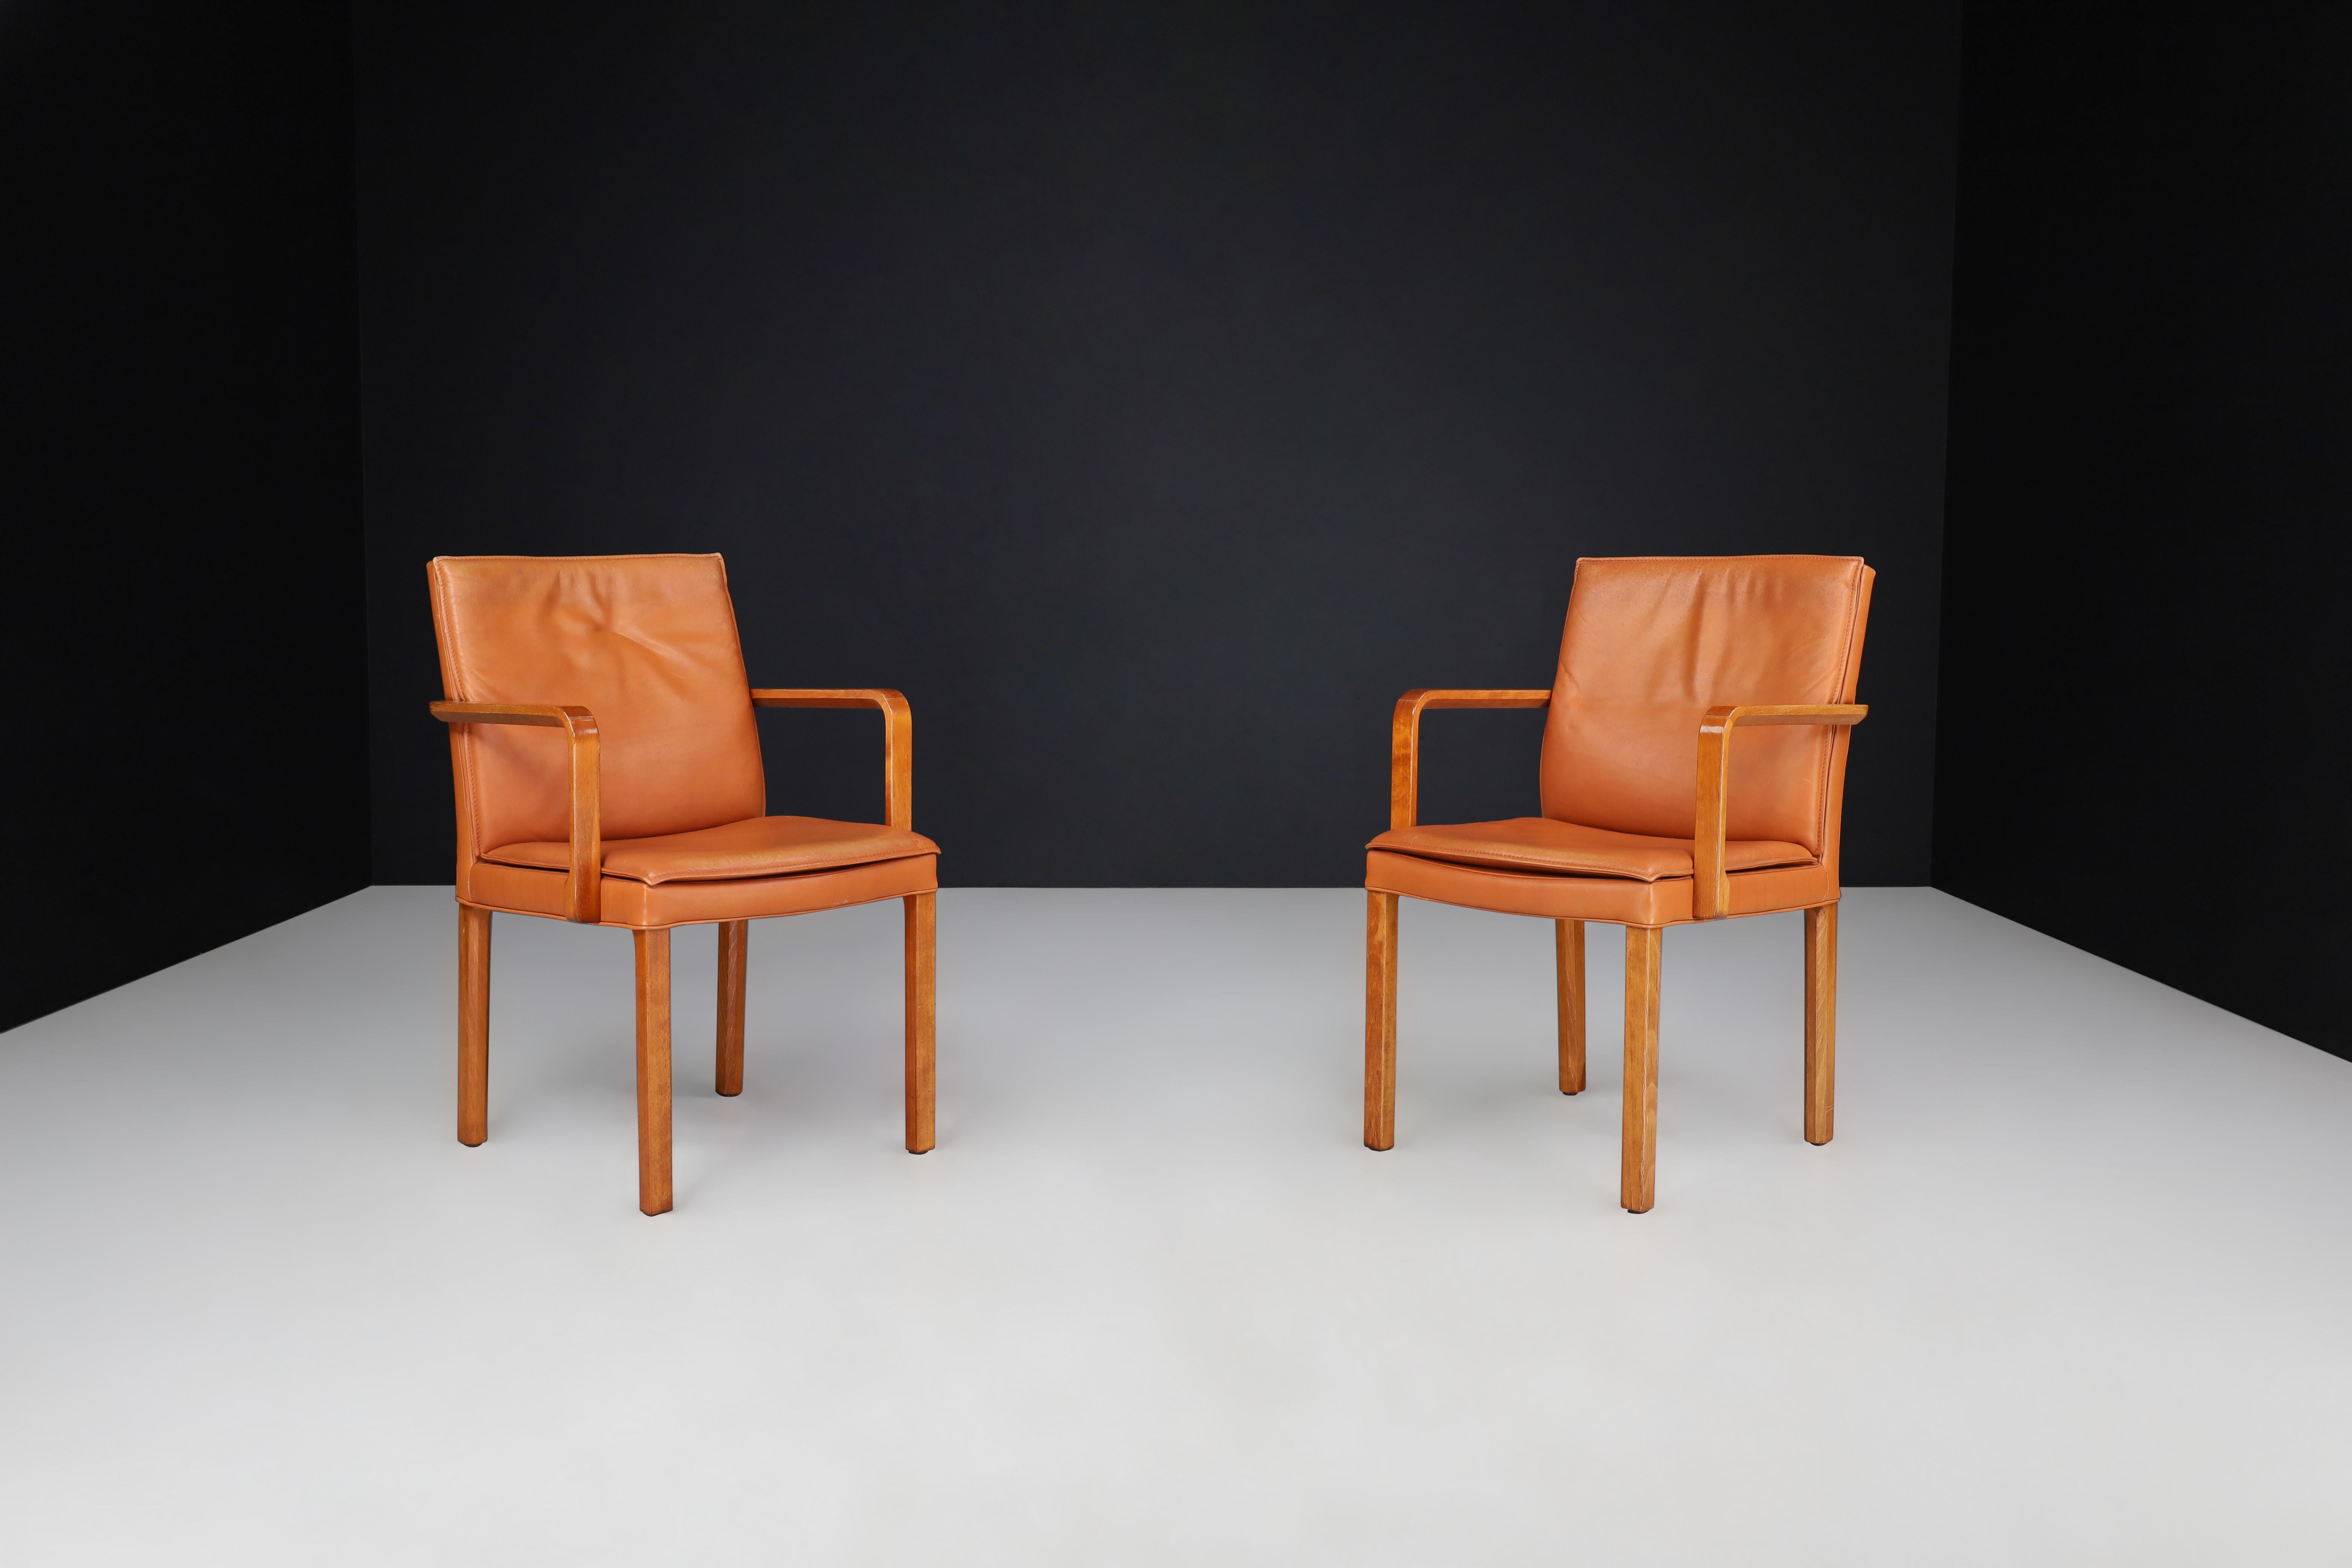 Walter Knoll Paire de deux fauteuils en bentwood et cuir cognac, Allemagne 1970

Cet ensemble de deux fauteuils ou chaises d'appoint modernes a été fabriqué par Walter Knoll en Allemagne dans les années 1970 et a été revêtu d'un luxueux cuir cognac.